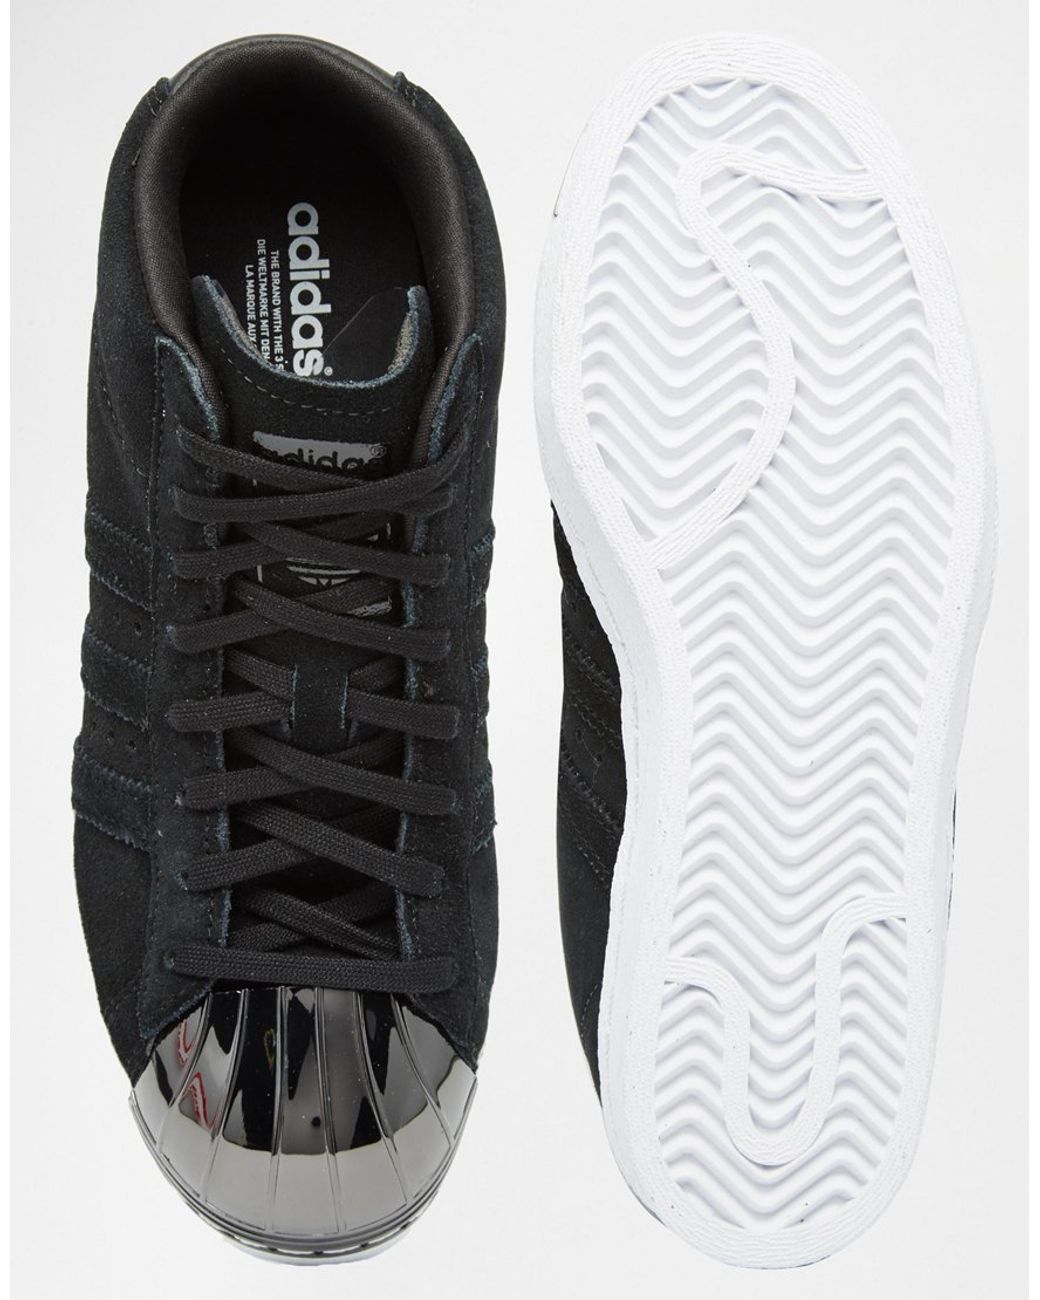 adidas Superstar Metal Toe in Black